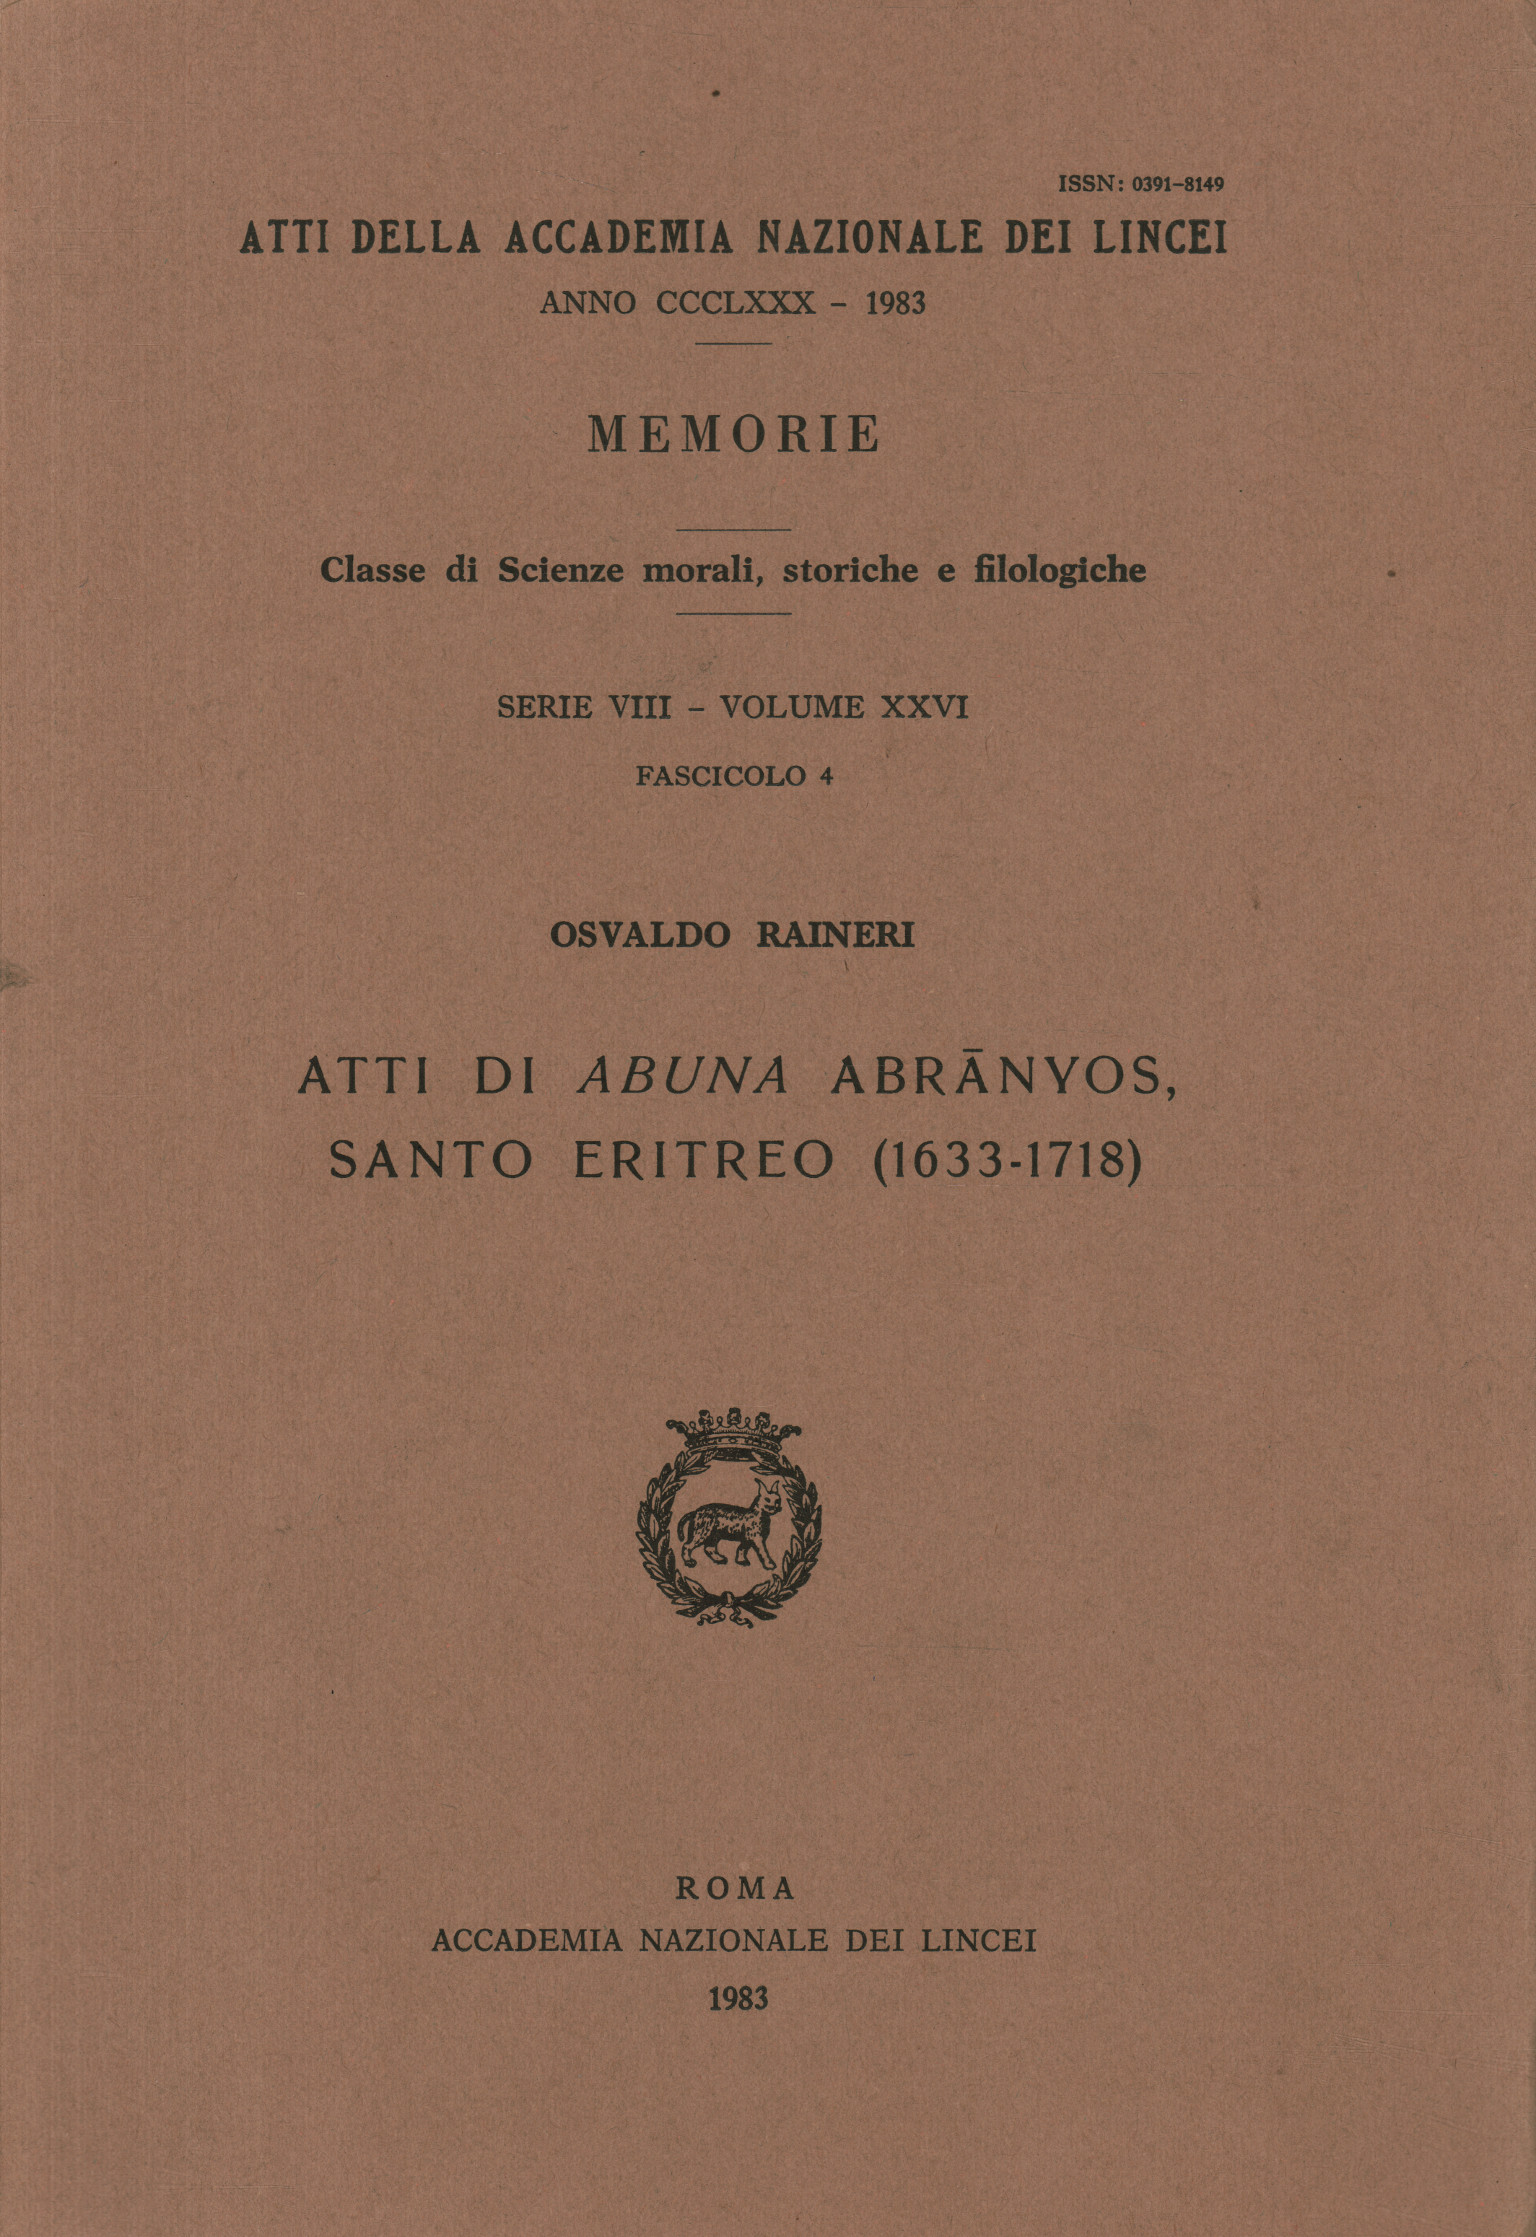 Actes d'Abuna Abrānyos saint érythréen,Actes d'Abuna Abranyos saint érythréen